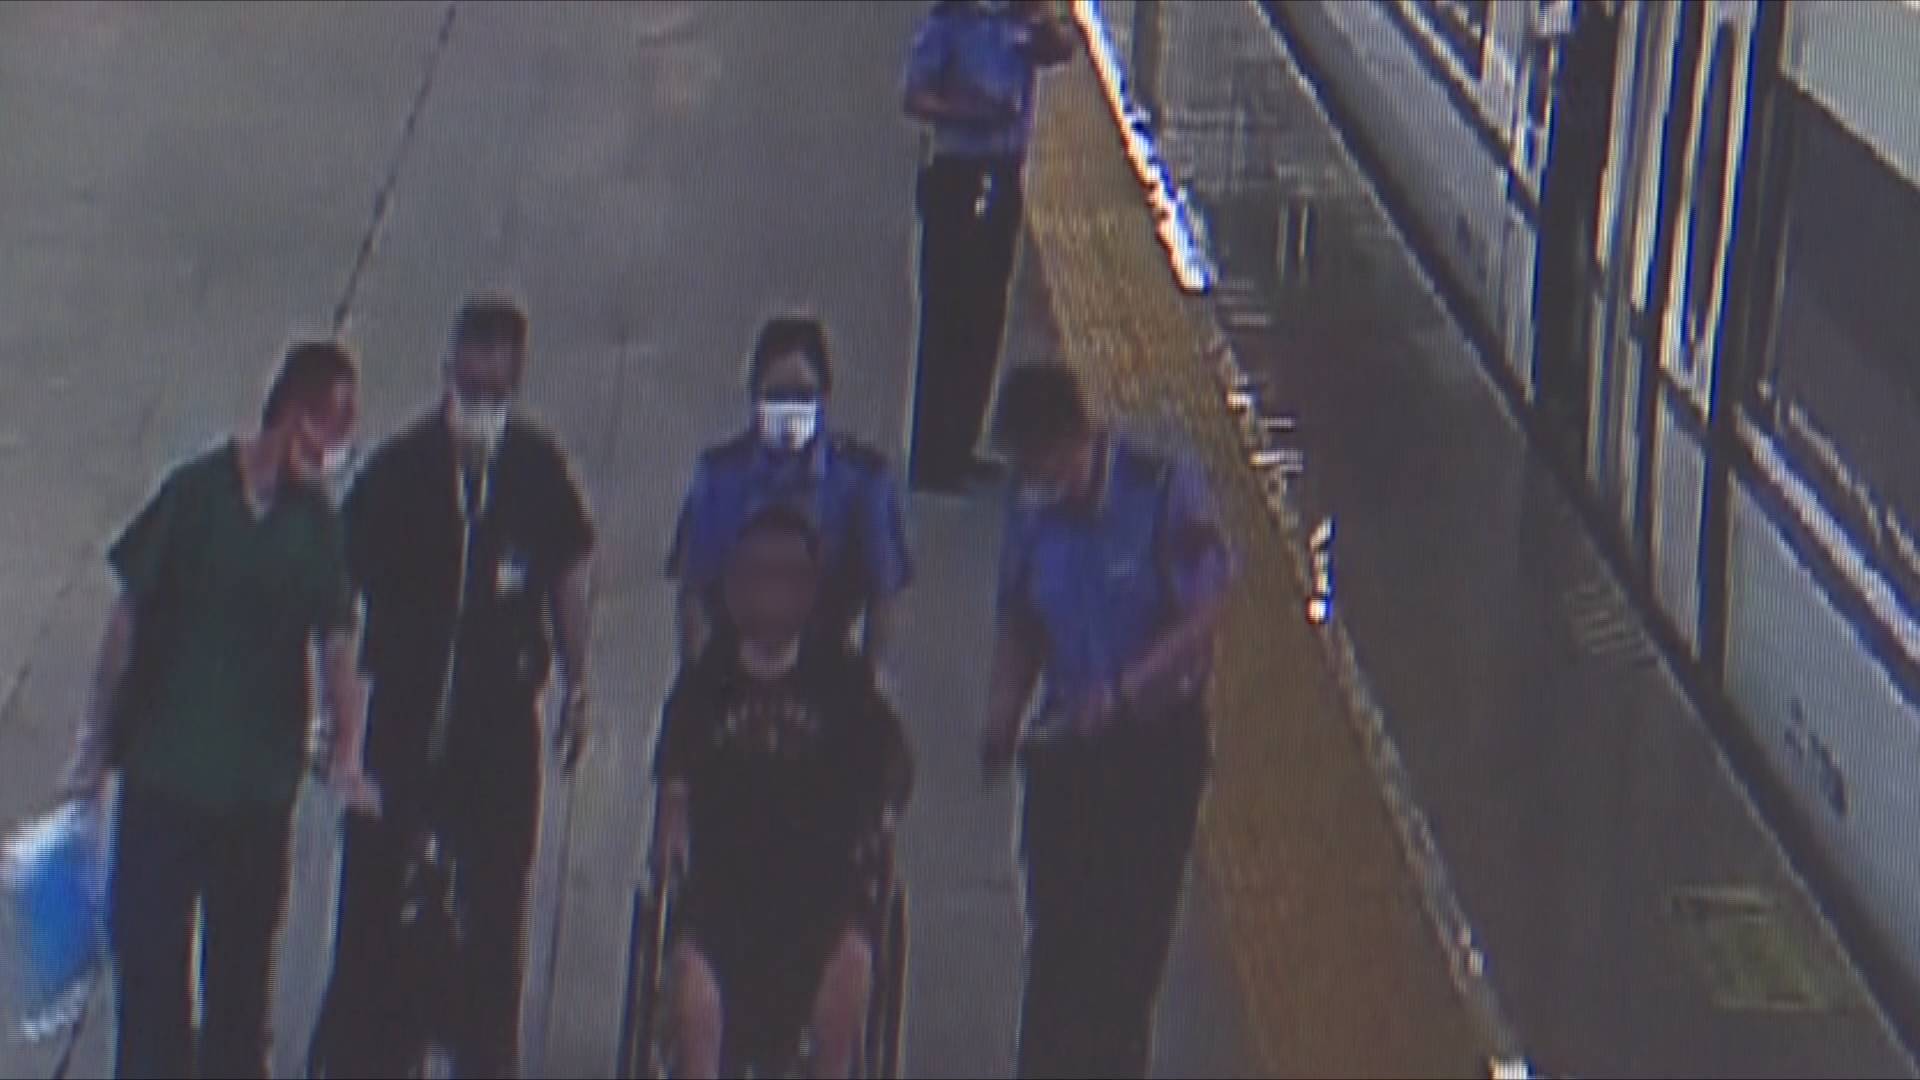 高铁上旅客腹痛难忍 滕州东站工作人员爱心接力救治